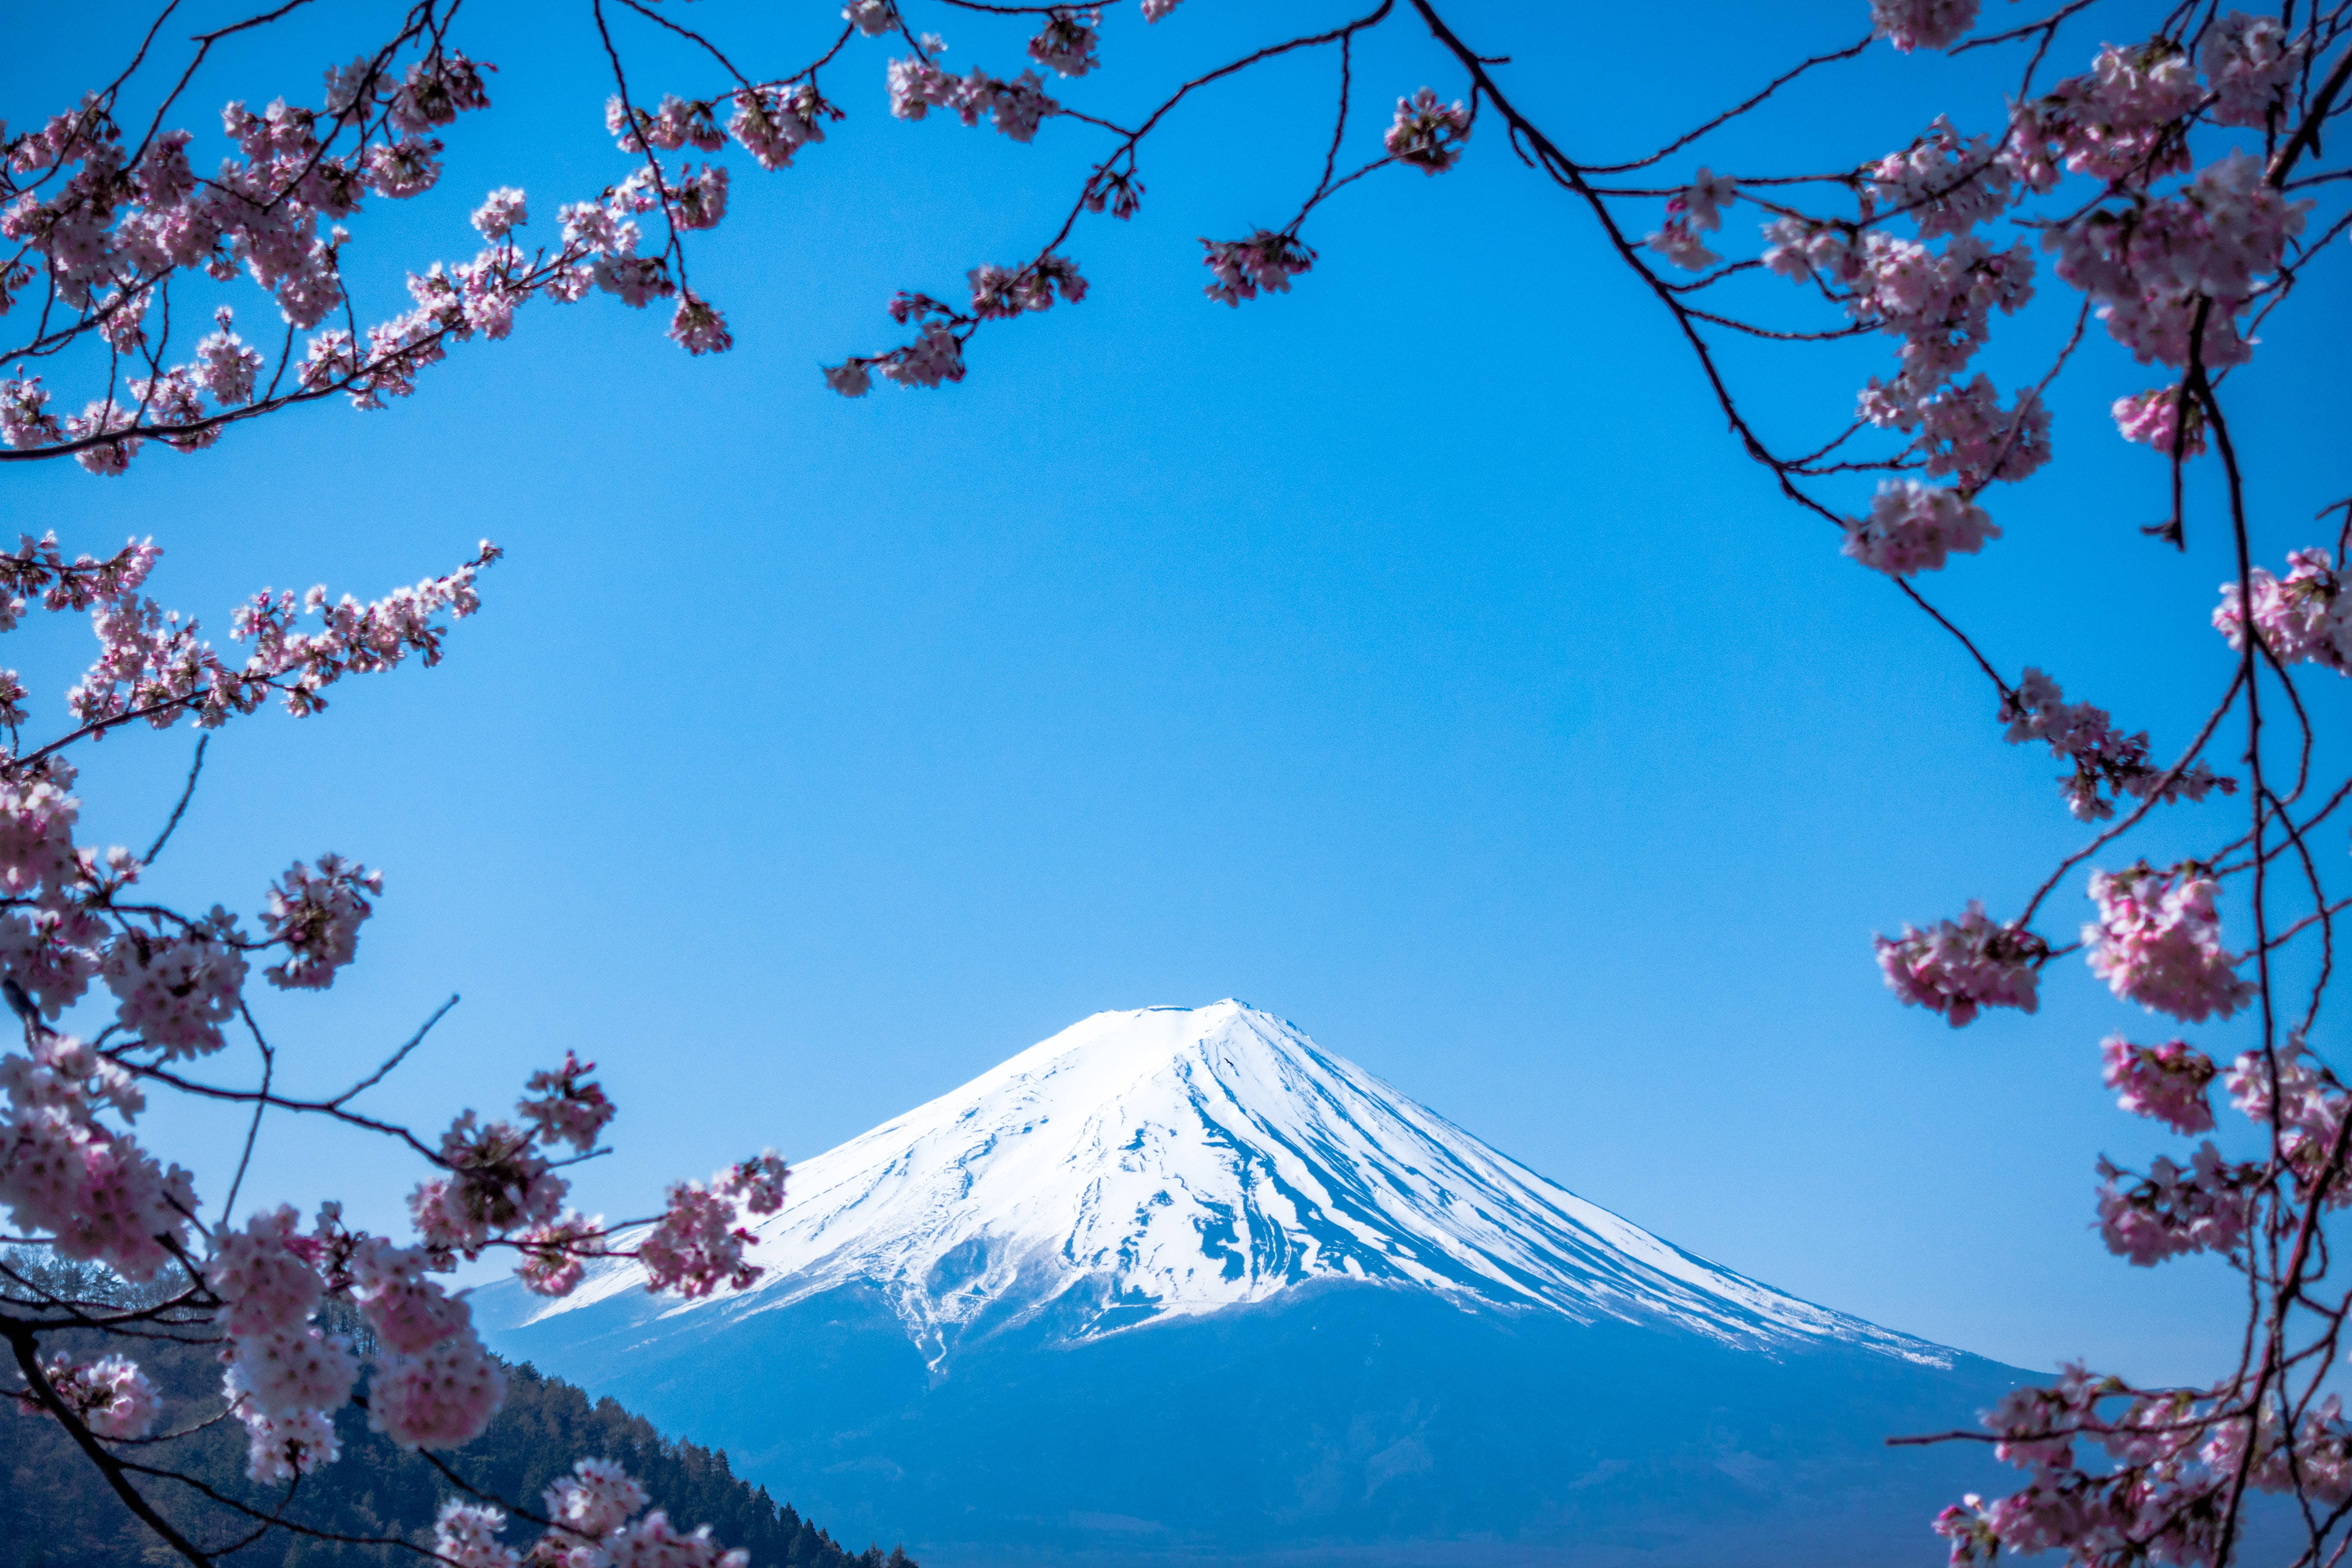 Japanese Hd Mount Fuji And Sakura Blossoms Wallpaper